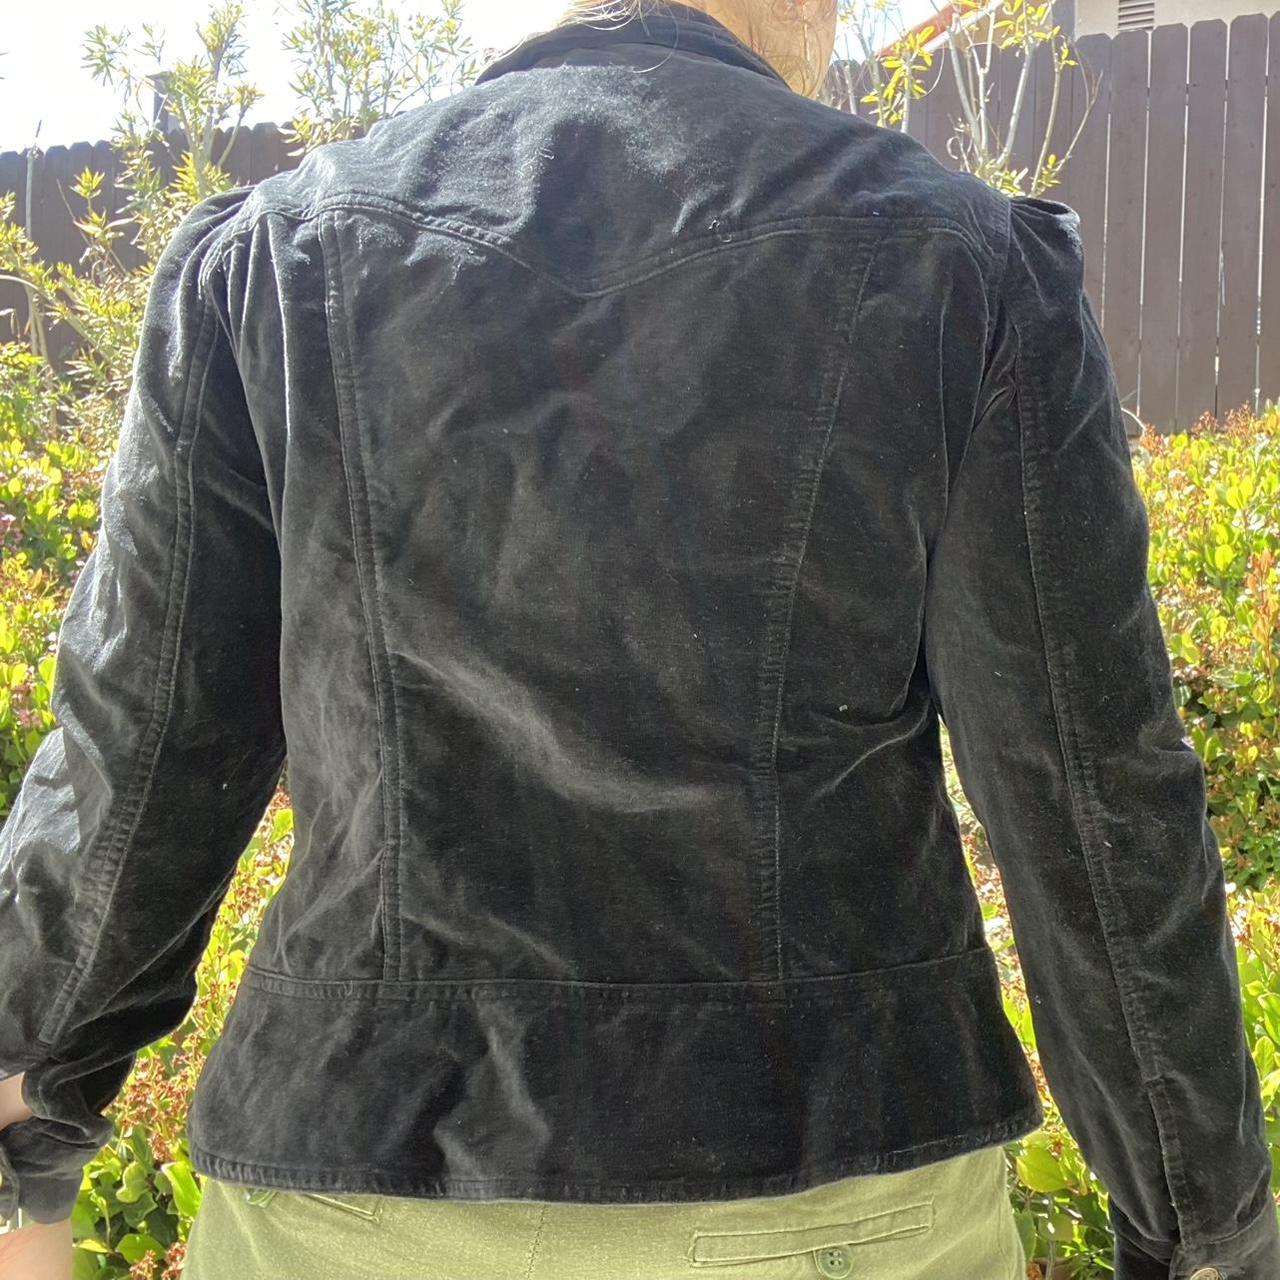 Product Image 3 - [#C0087]

Vintage black velvet/brushed corduroy jacket